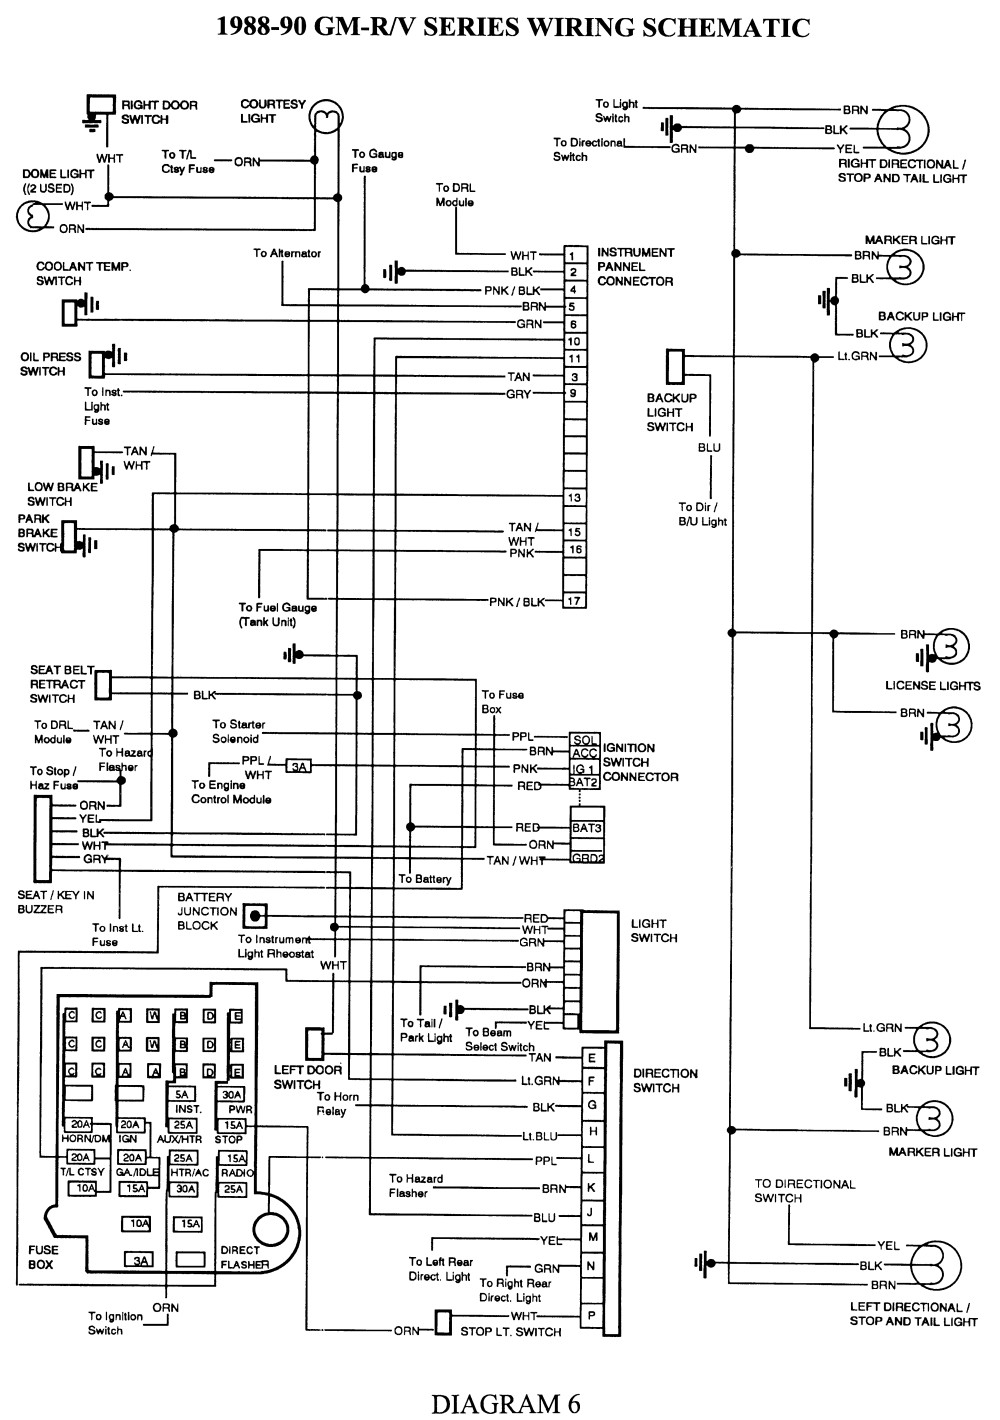 Repair Guides Wiring Diagrams Wiring Diagrams Autozone 1989 Chevy 2500 Wiring Diagram 1988 Chevy C2500 Wiring Diagram